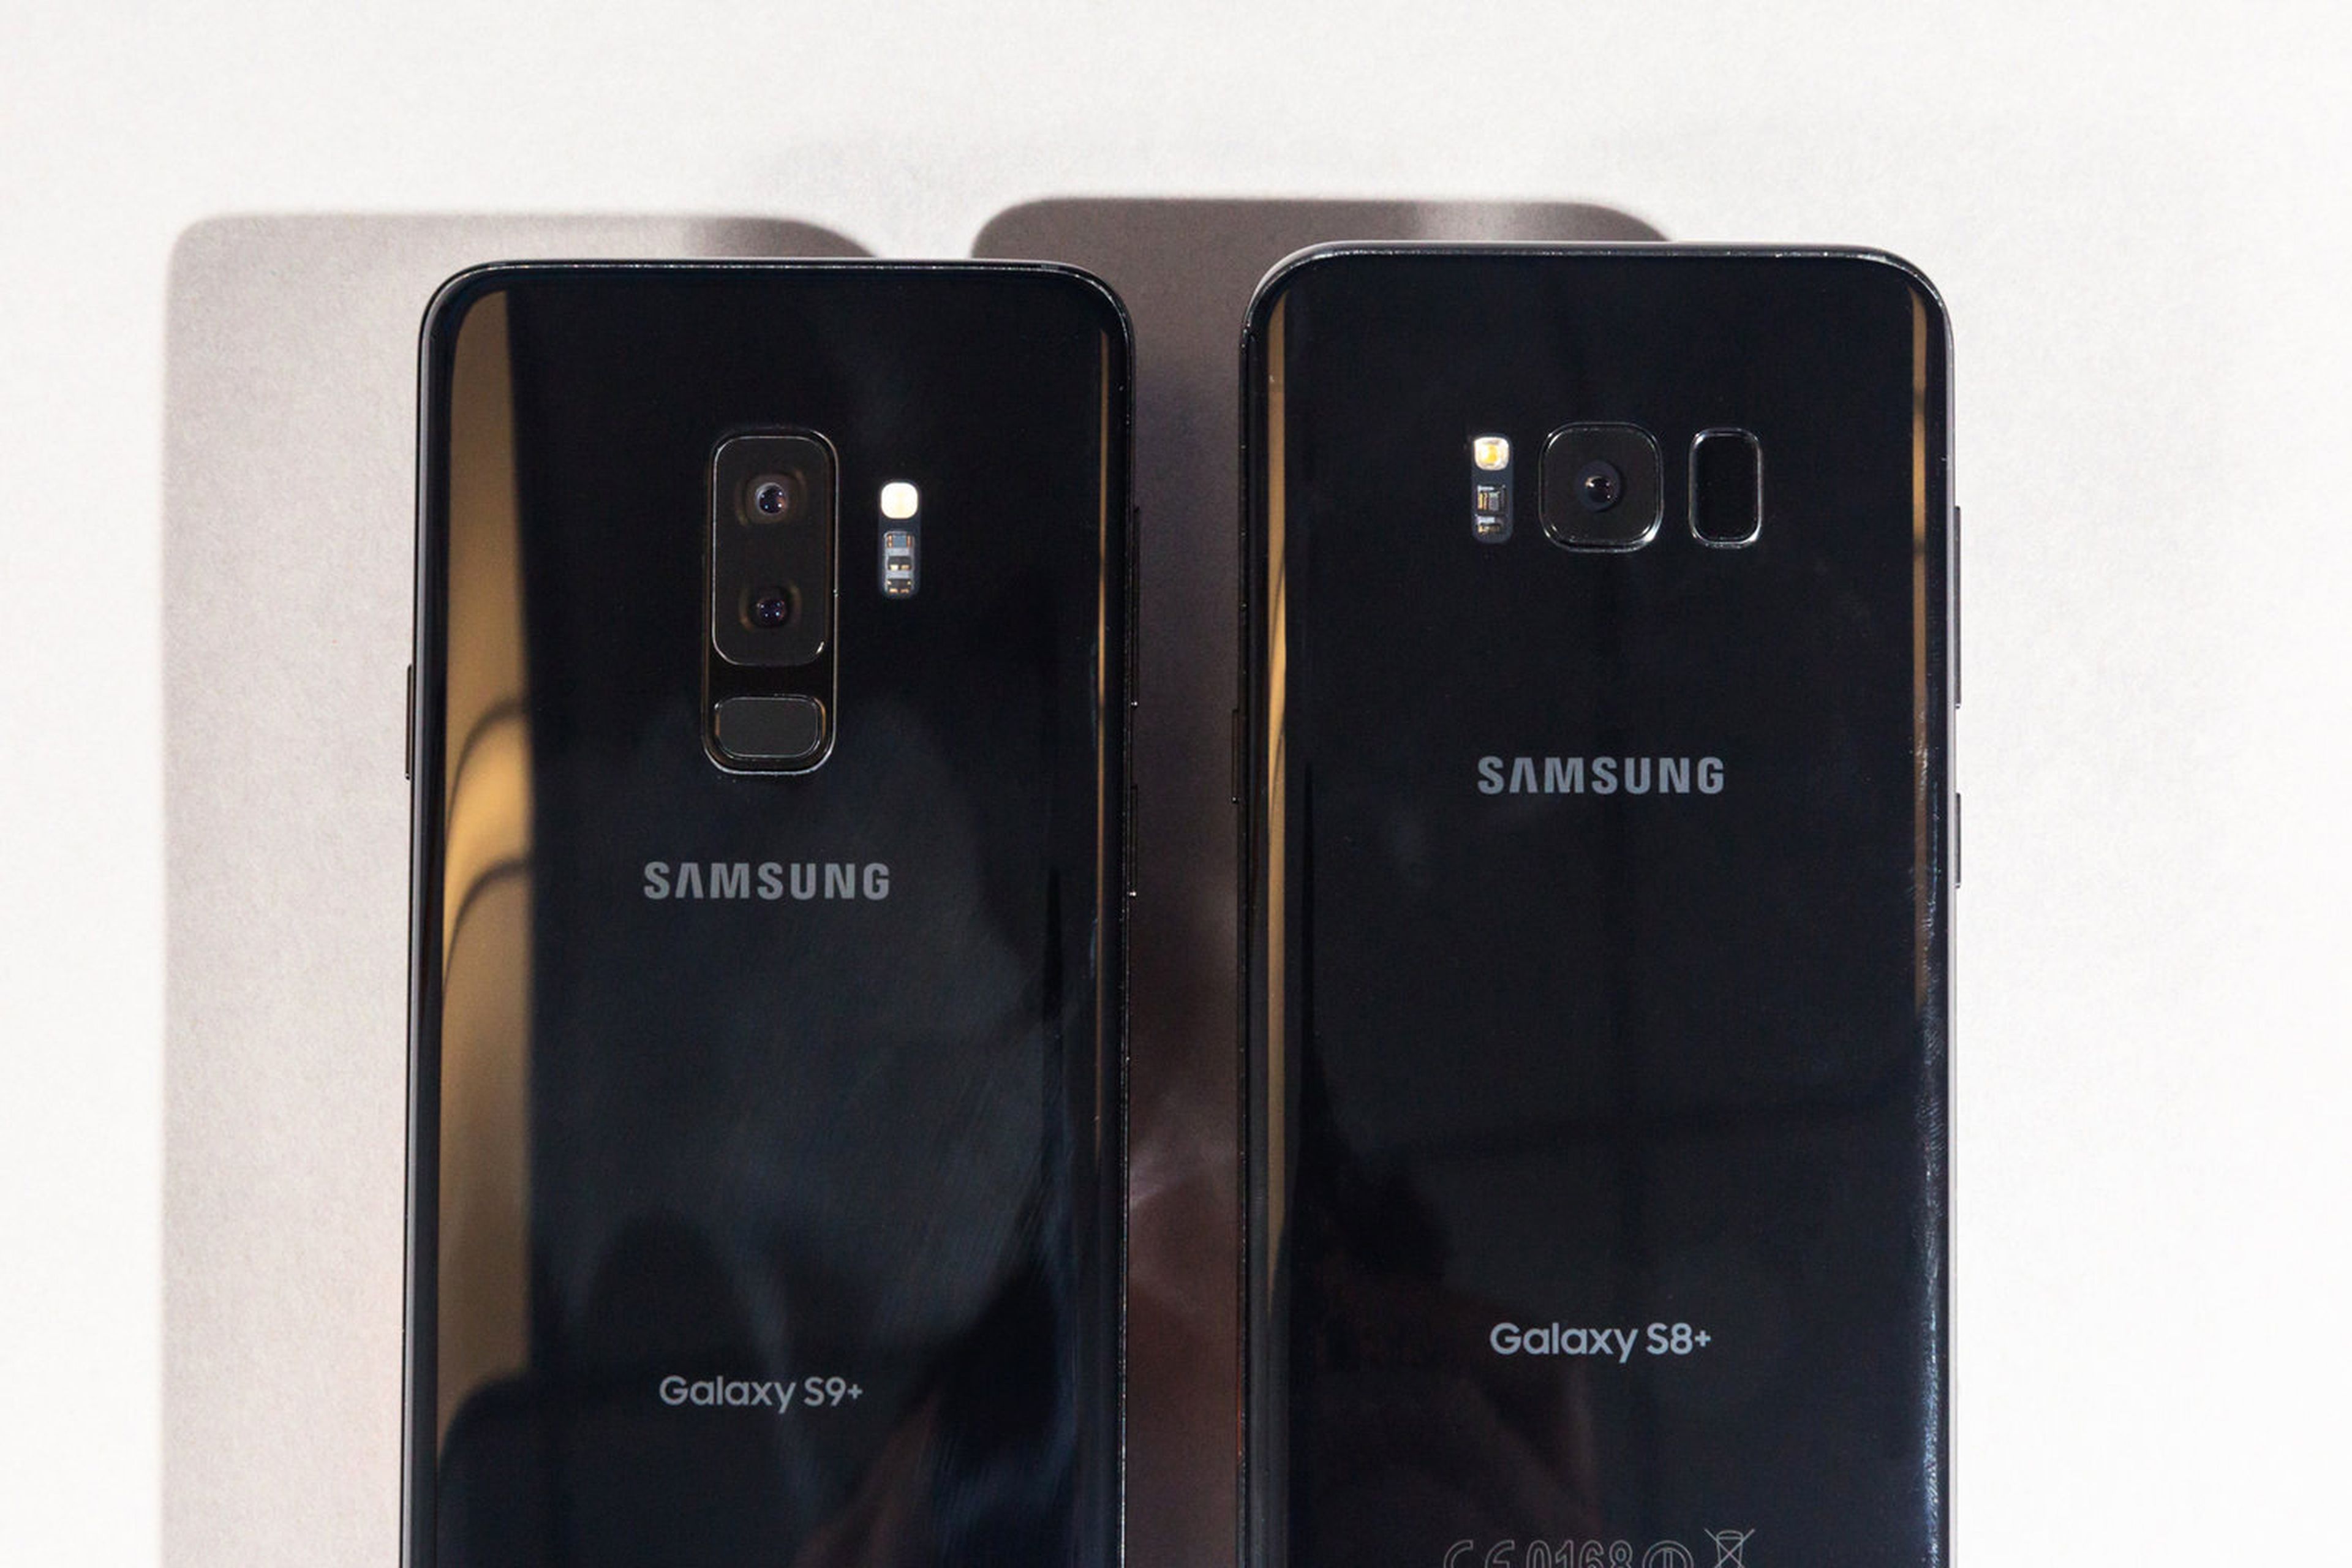 A la izquierda, el Galaxy S9+; a la derecha, el Galaxy S8.